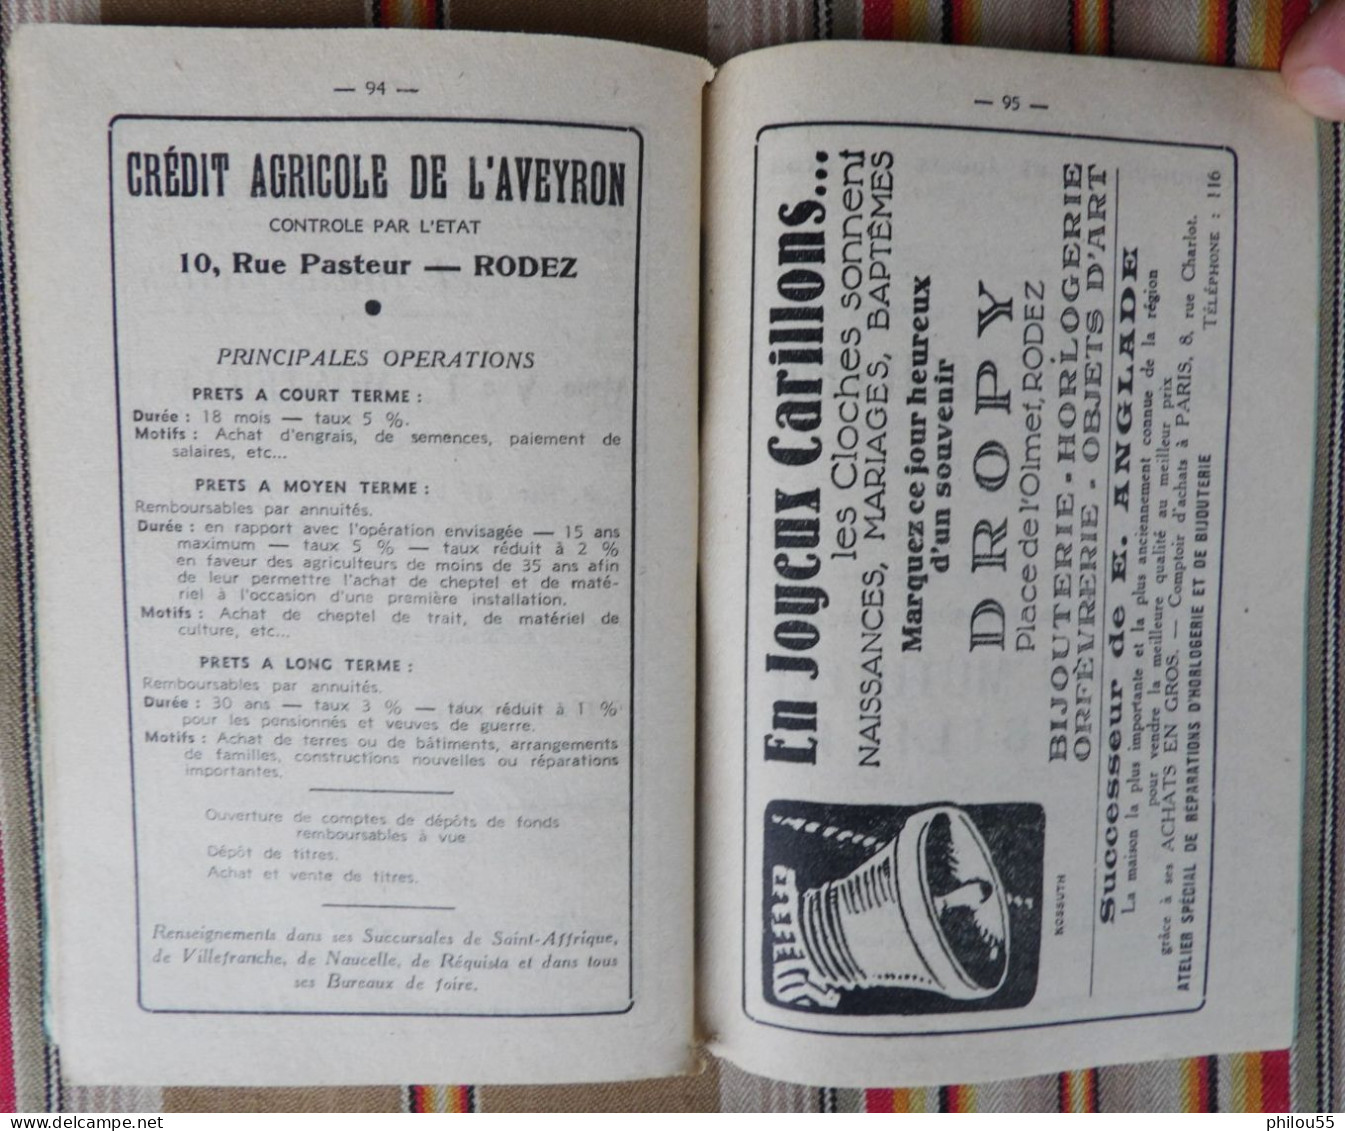 12 RODEZ Calendrier Bissextile 1952 systeme TOALDO Foires du departement et Limitrophes PUB